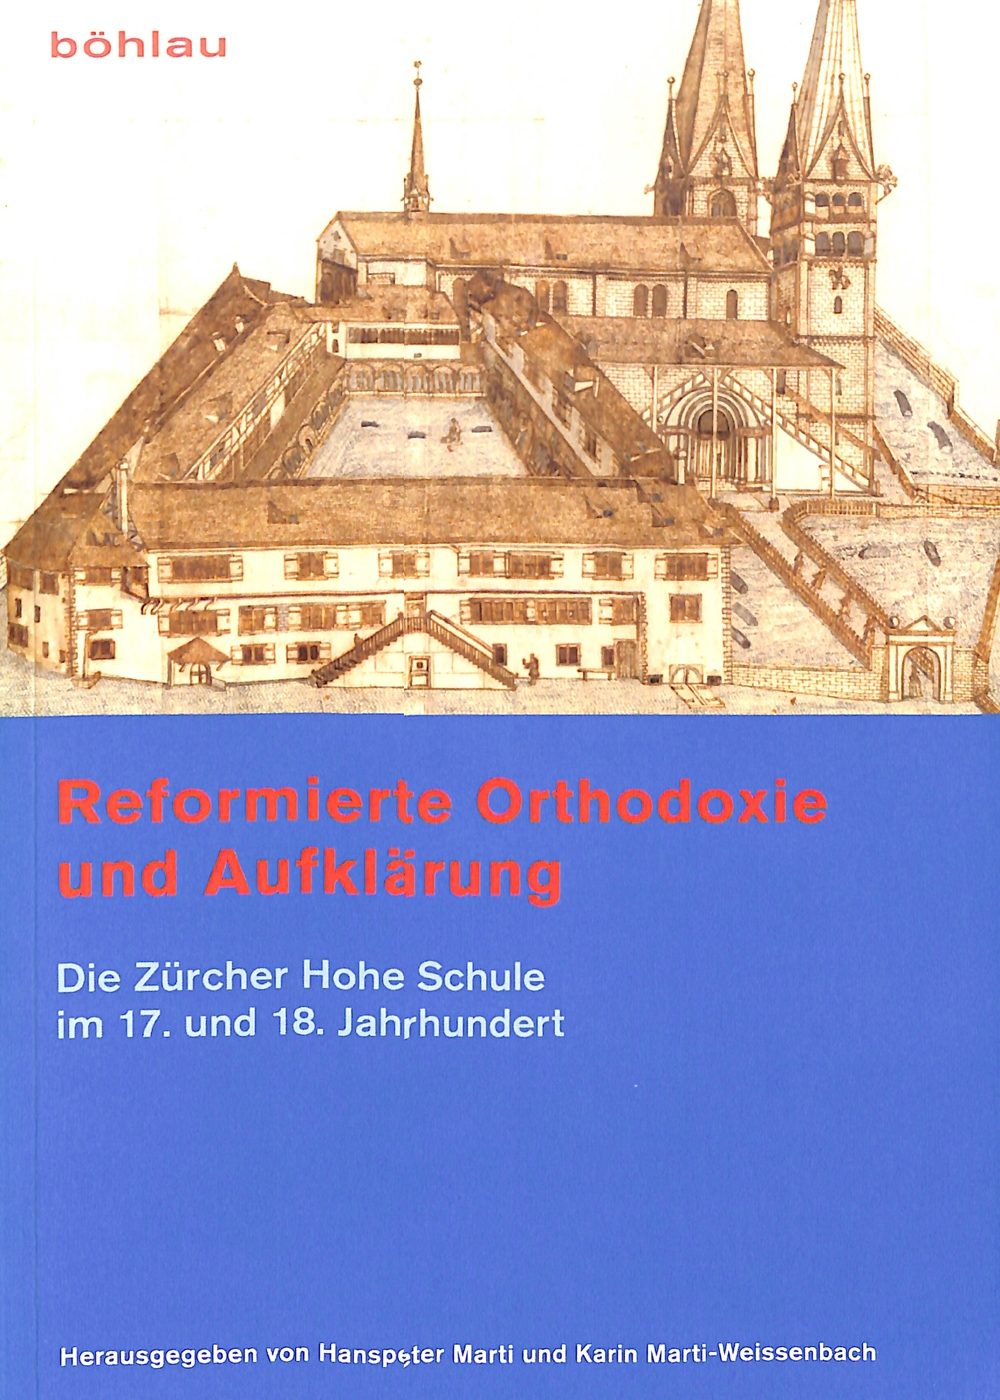 Reformierte Orthodoxie und Aufklärung. Die Zürcher Hohe Schule im 17. und 18. Jahrhundert.